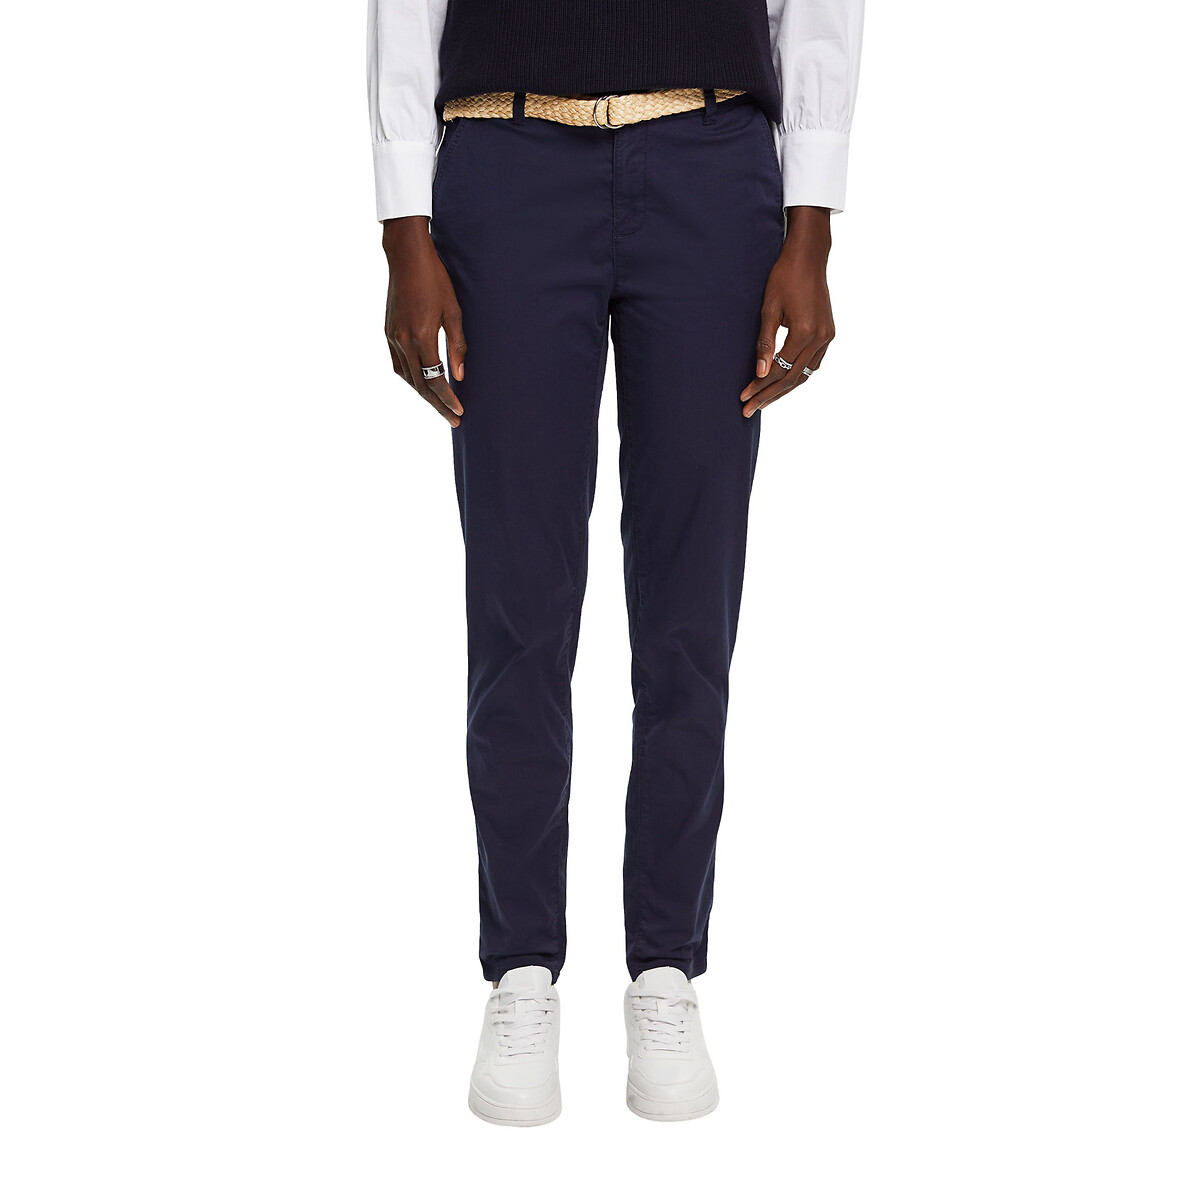 Esprit Regular Size Pants for Men | eBay